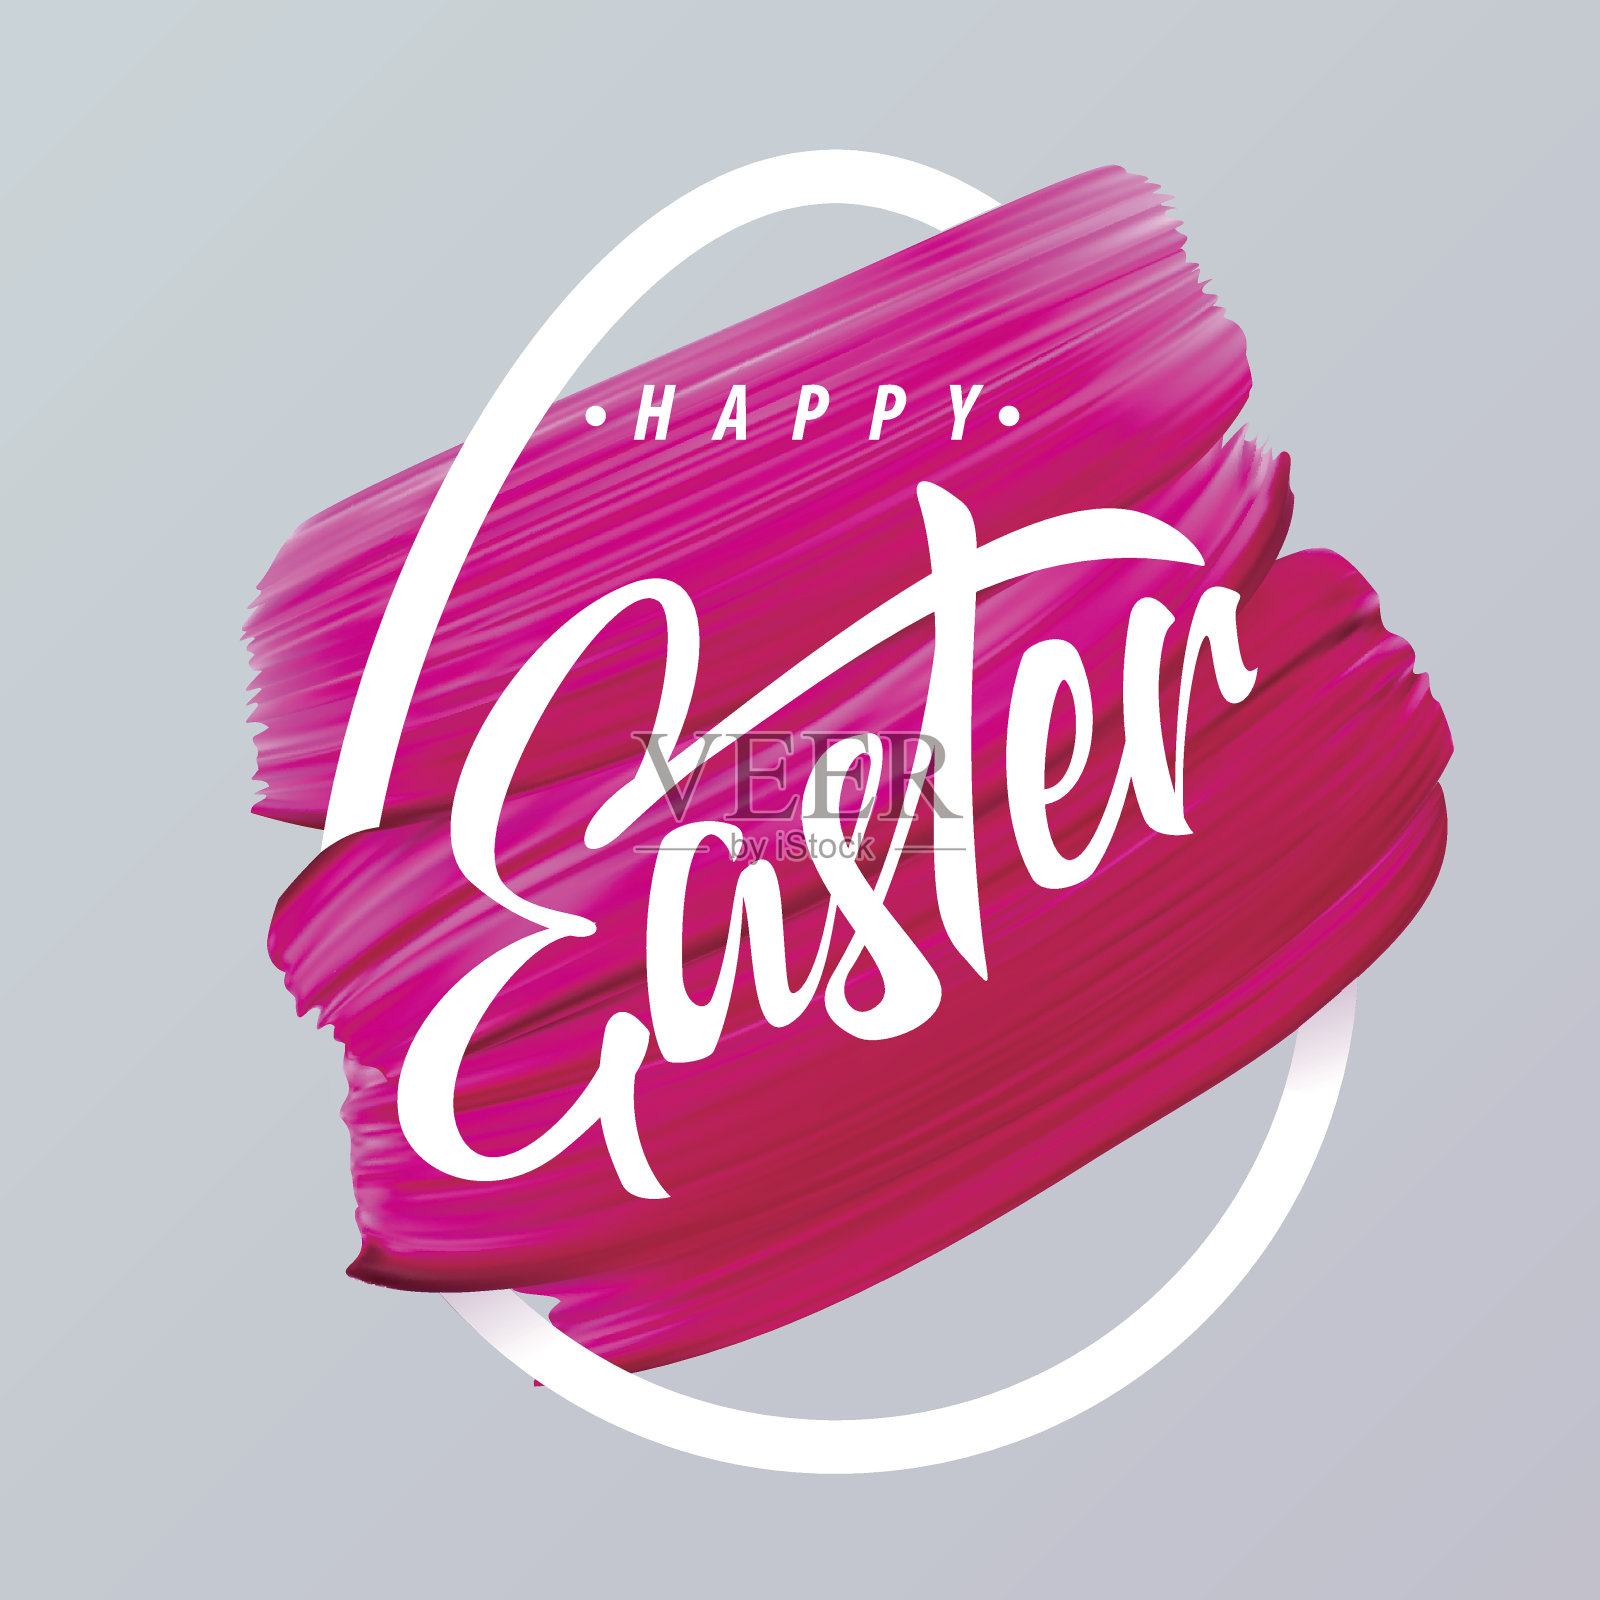 复活节快乐粉色口红涂在抽象的鸡蛋轮廓设计模板素材